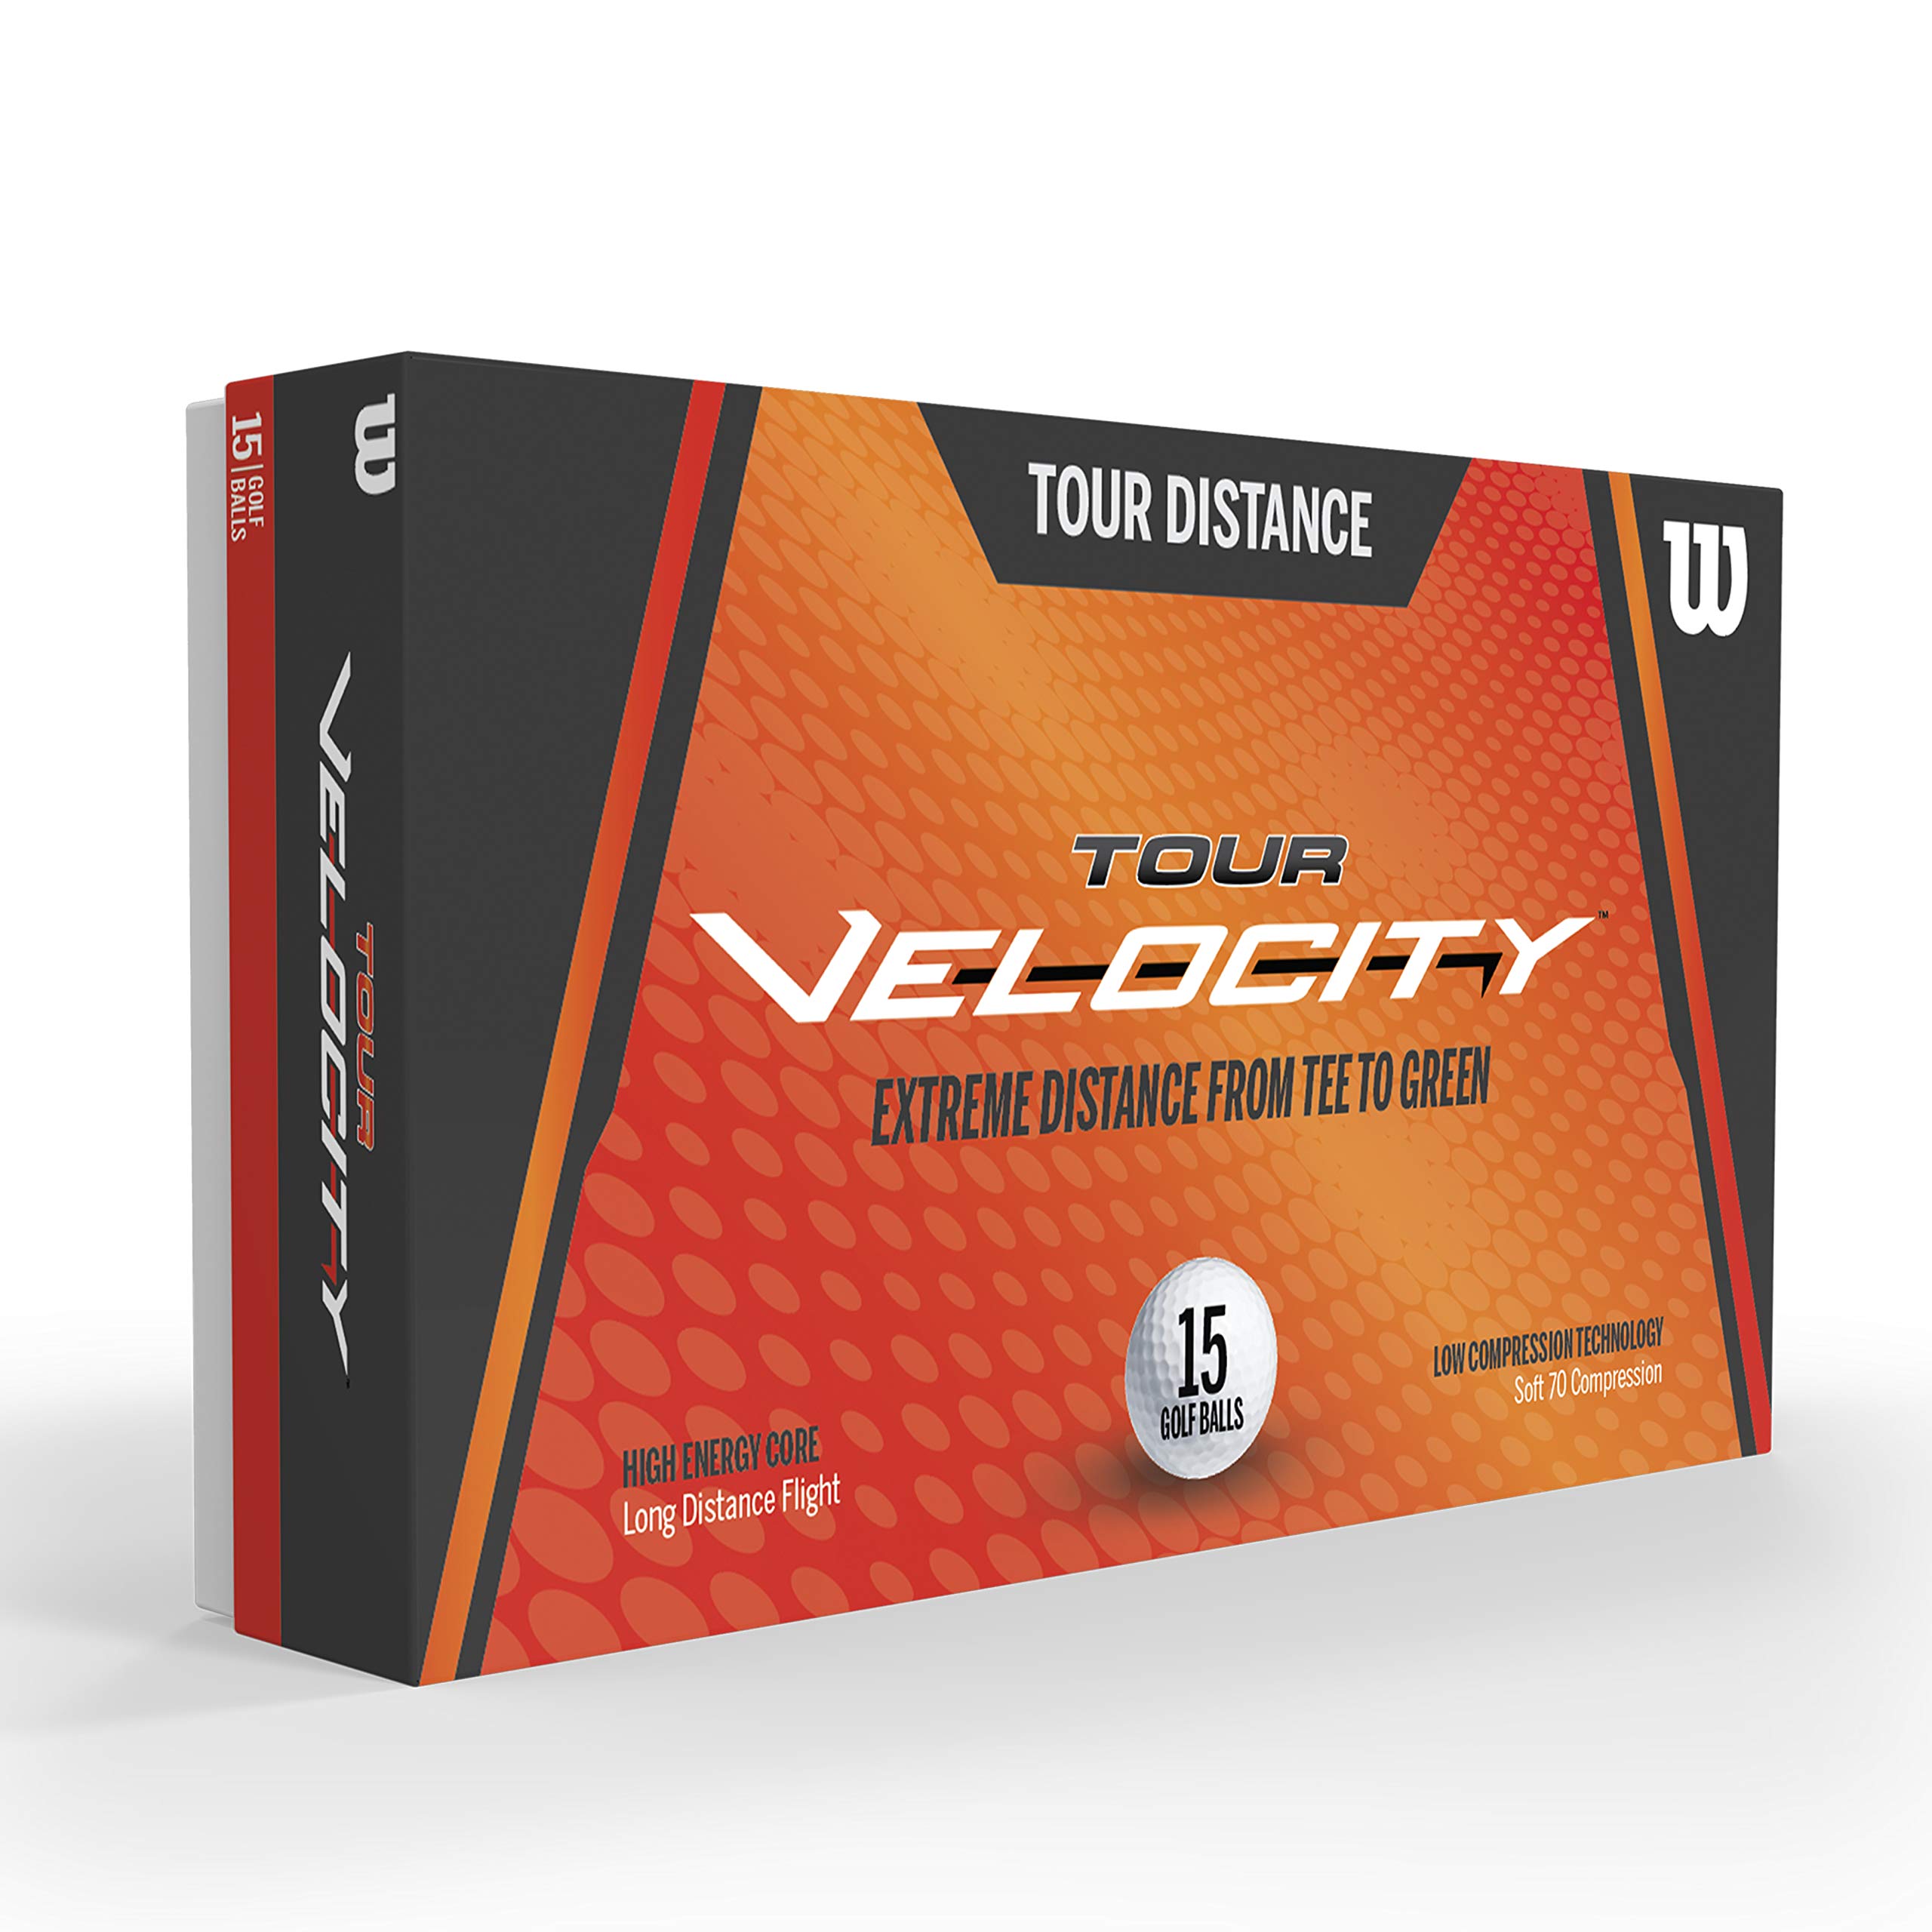 Wilson Golf Tour Velocity 15 Golf Ball Pack